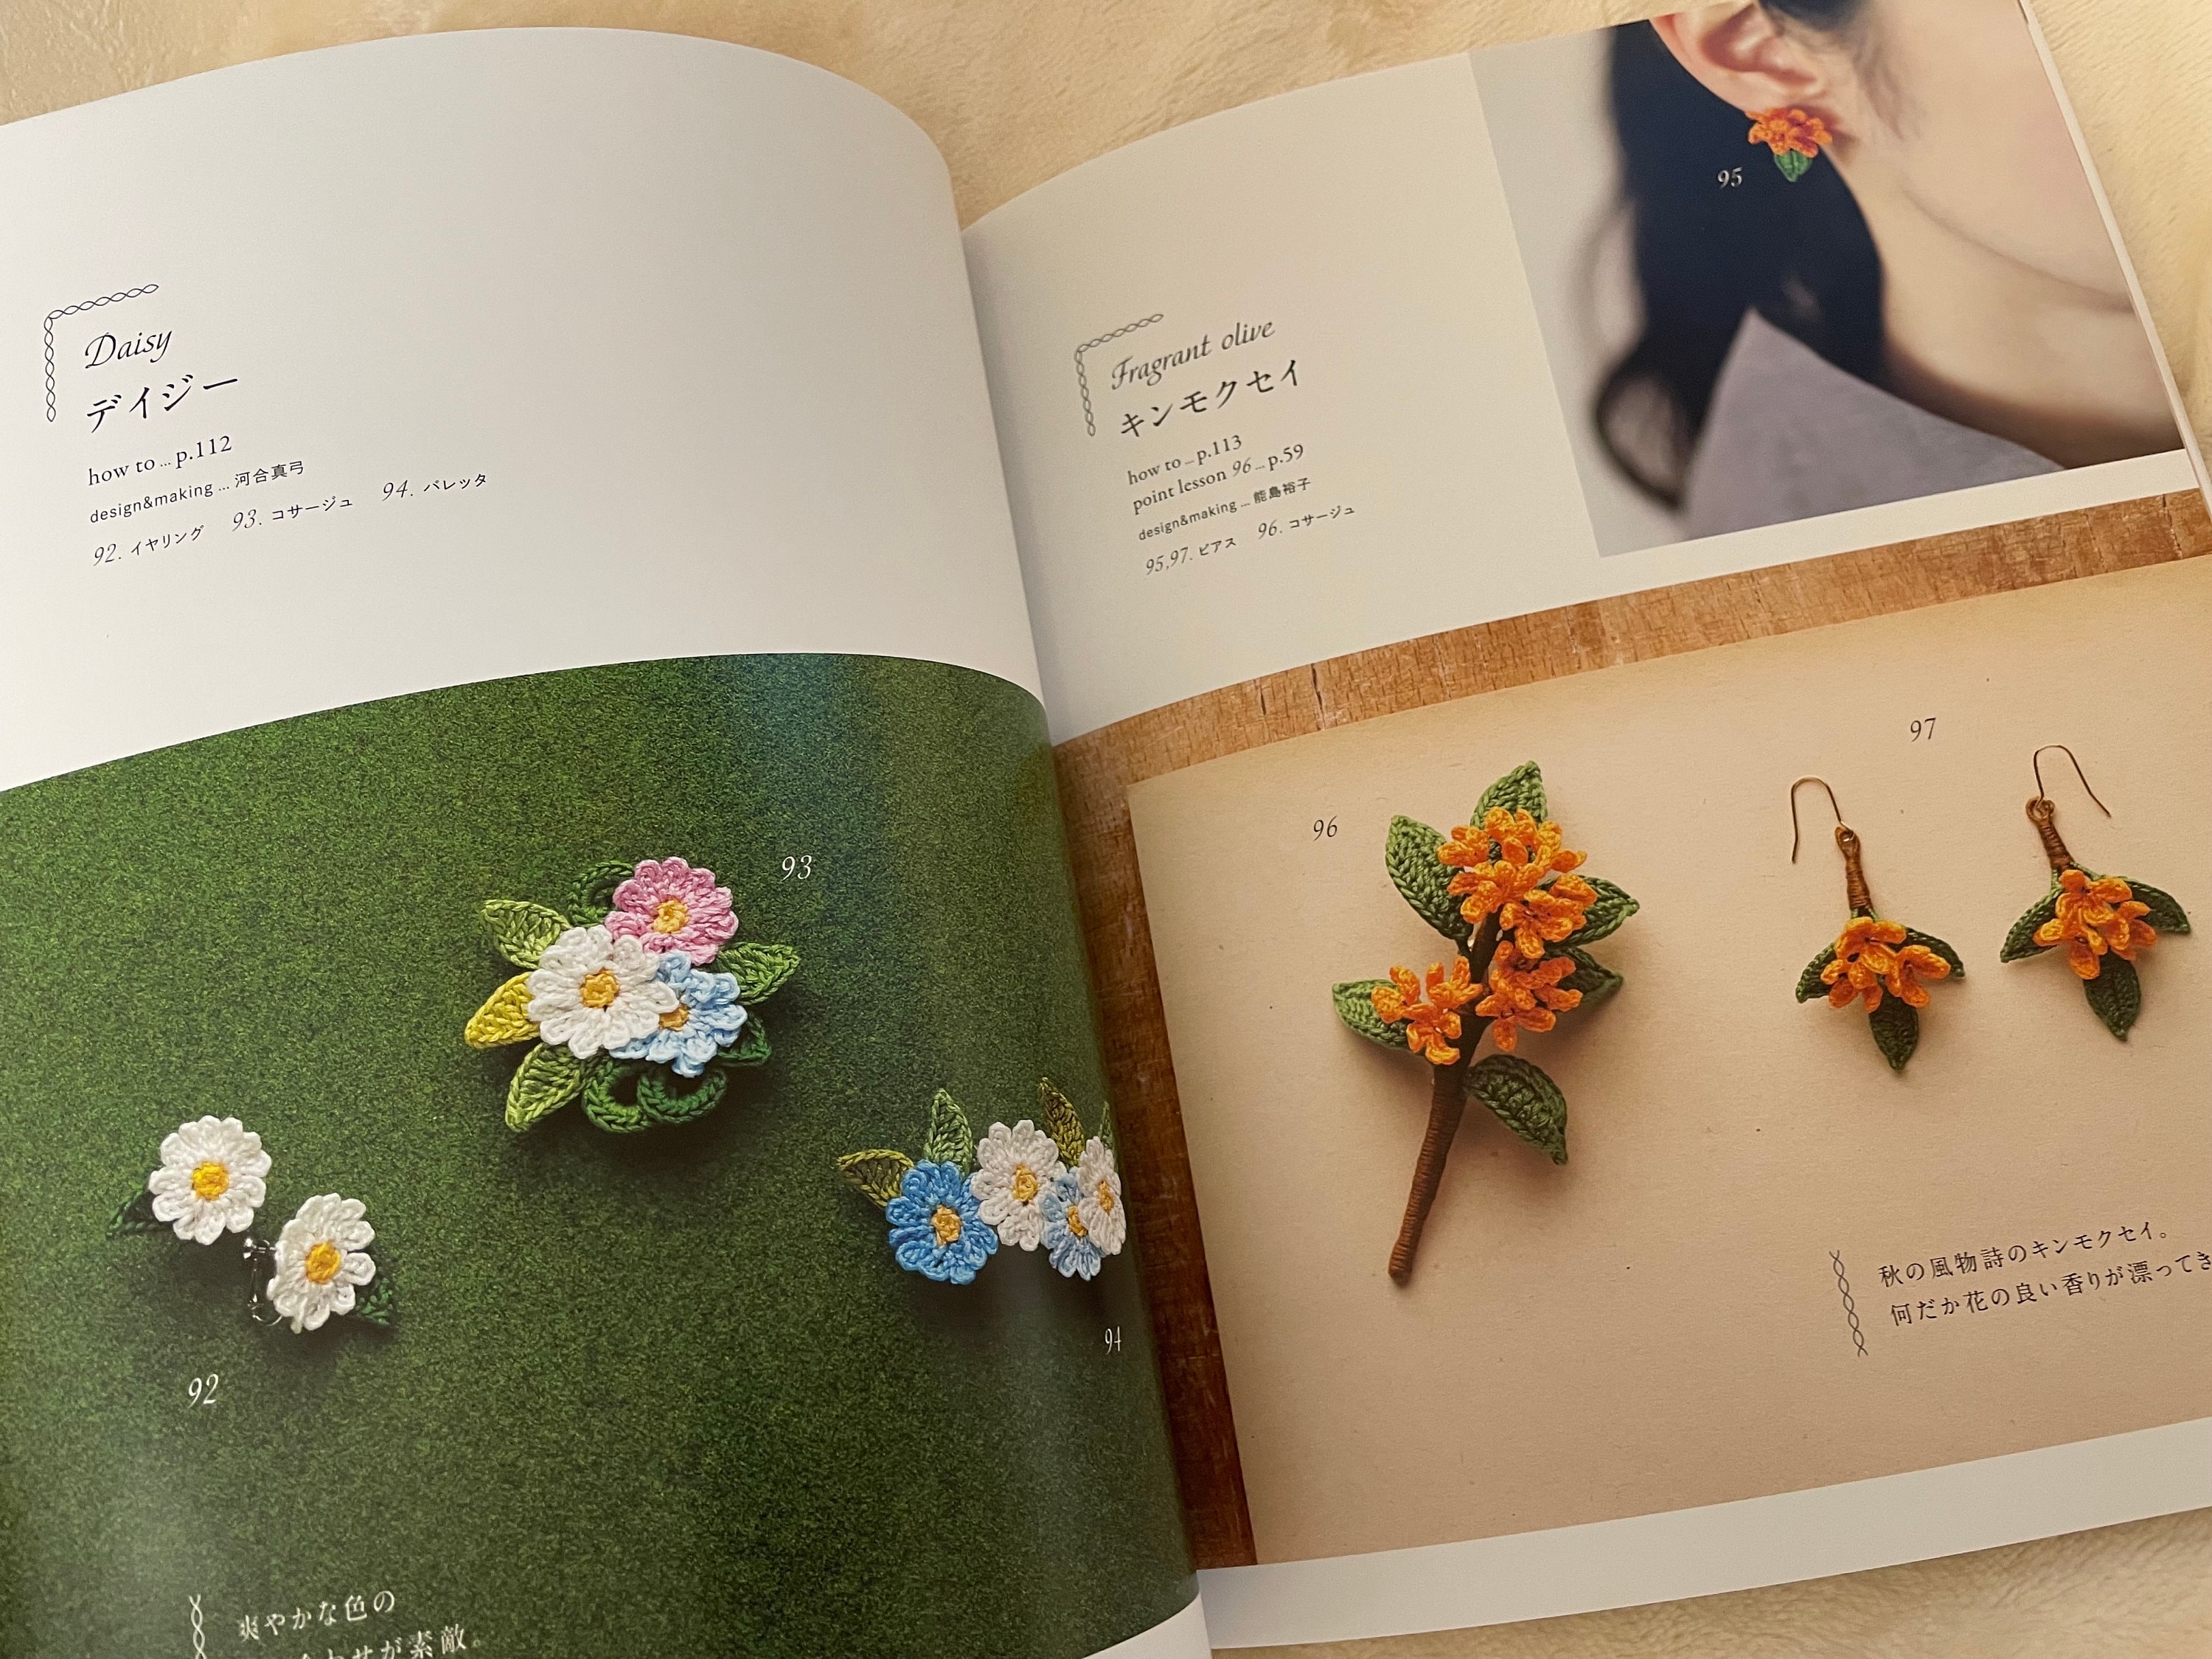 Crochet Flower Corsages Japanese Craft Book -  Hong Kong